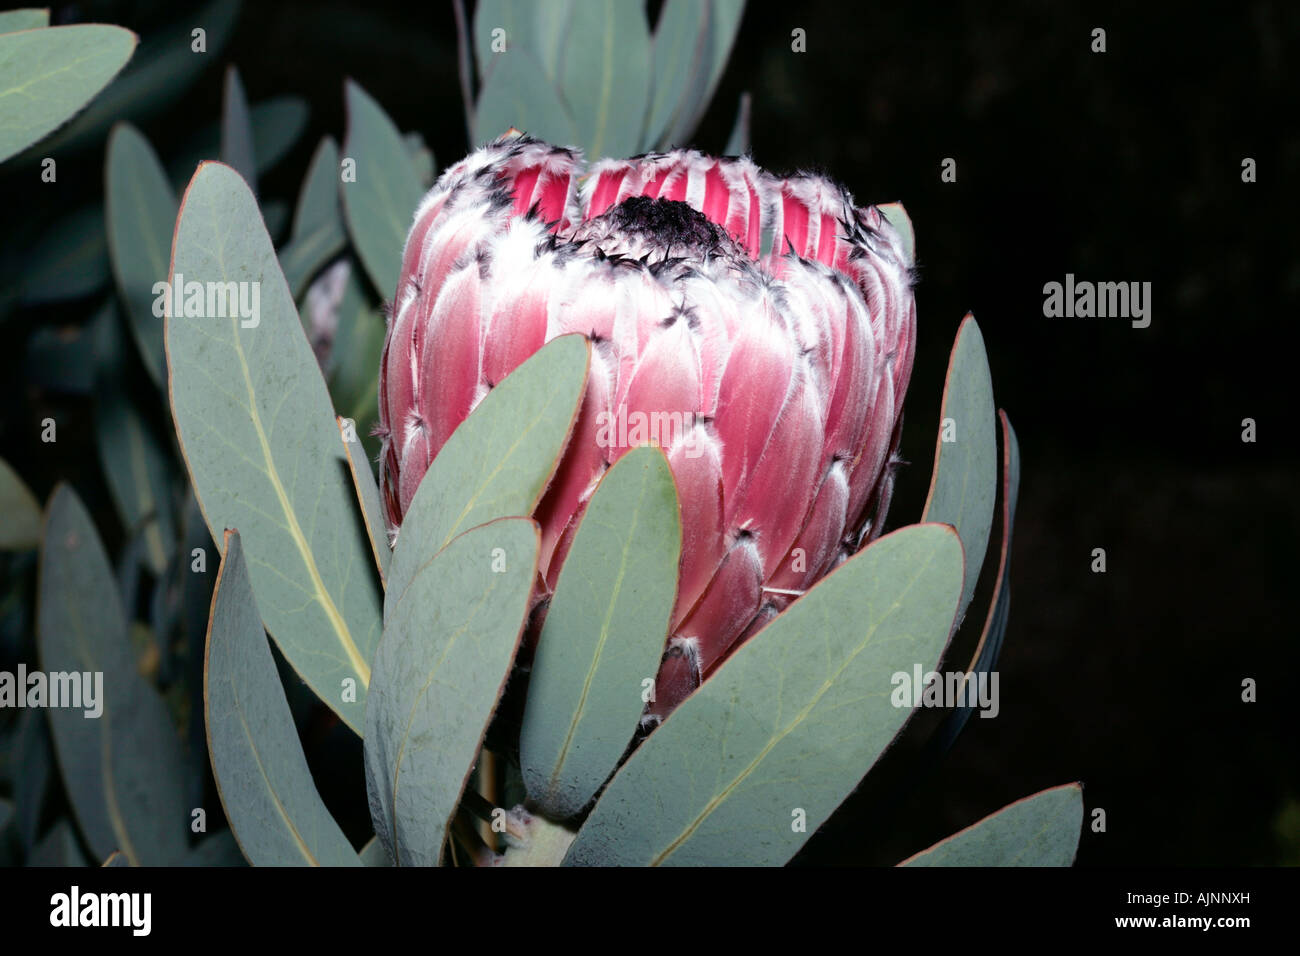 Oleander-leaved Protea/ Long leaved Sugarbush - Protea neriifolia -Family Proteaceae Stock Photo